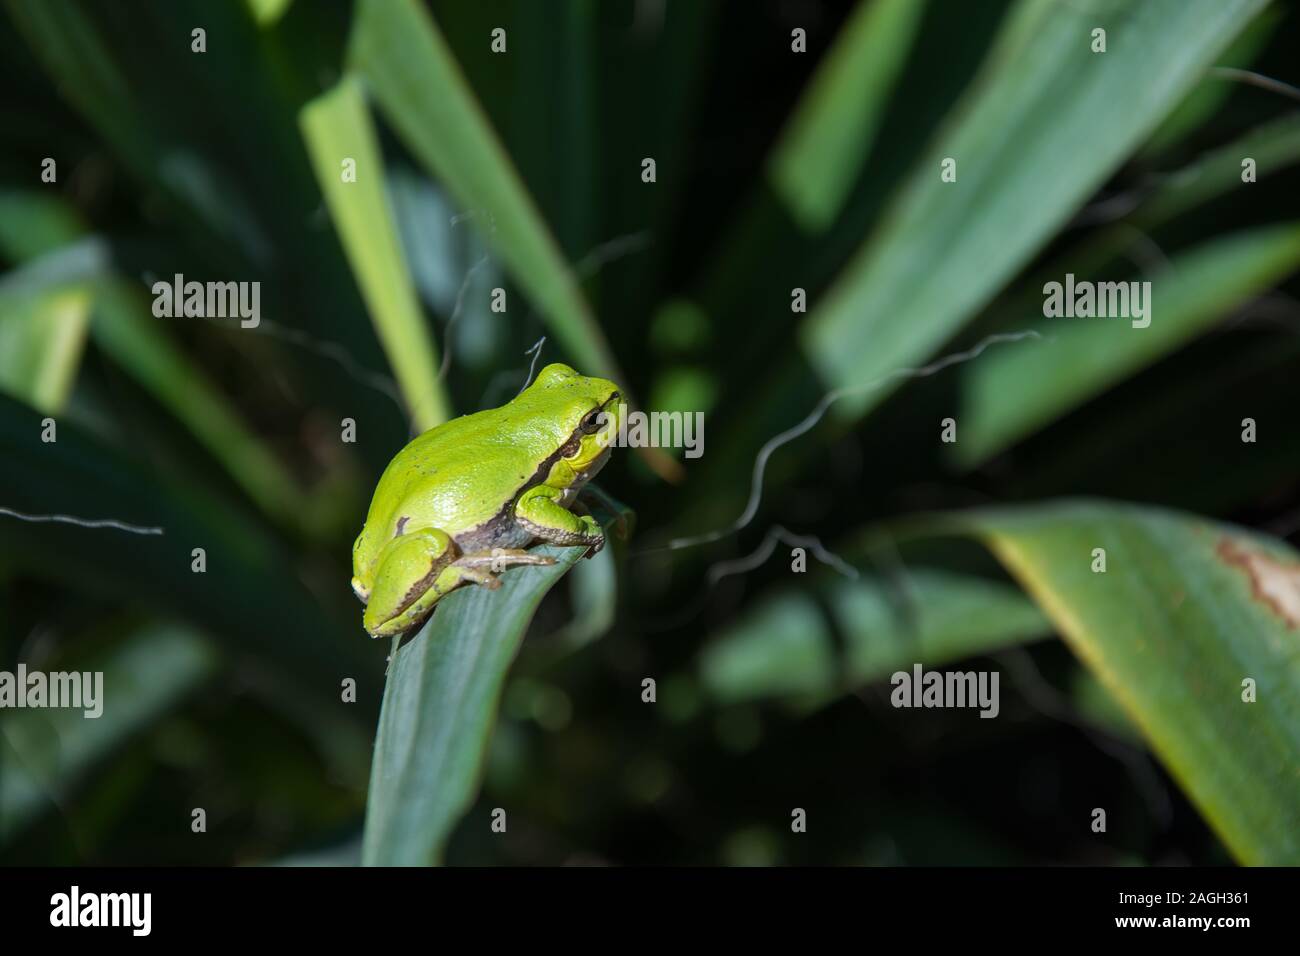 Unión Tree Frog sentado en una hoja de yuca - closeup Foto de stock